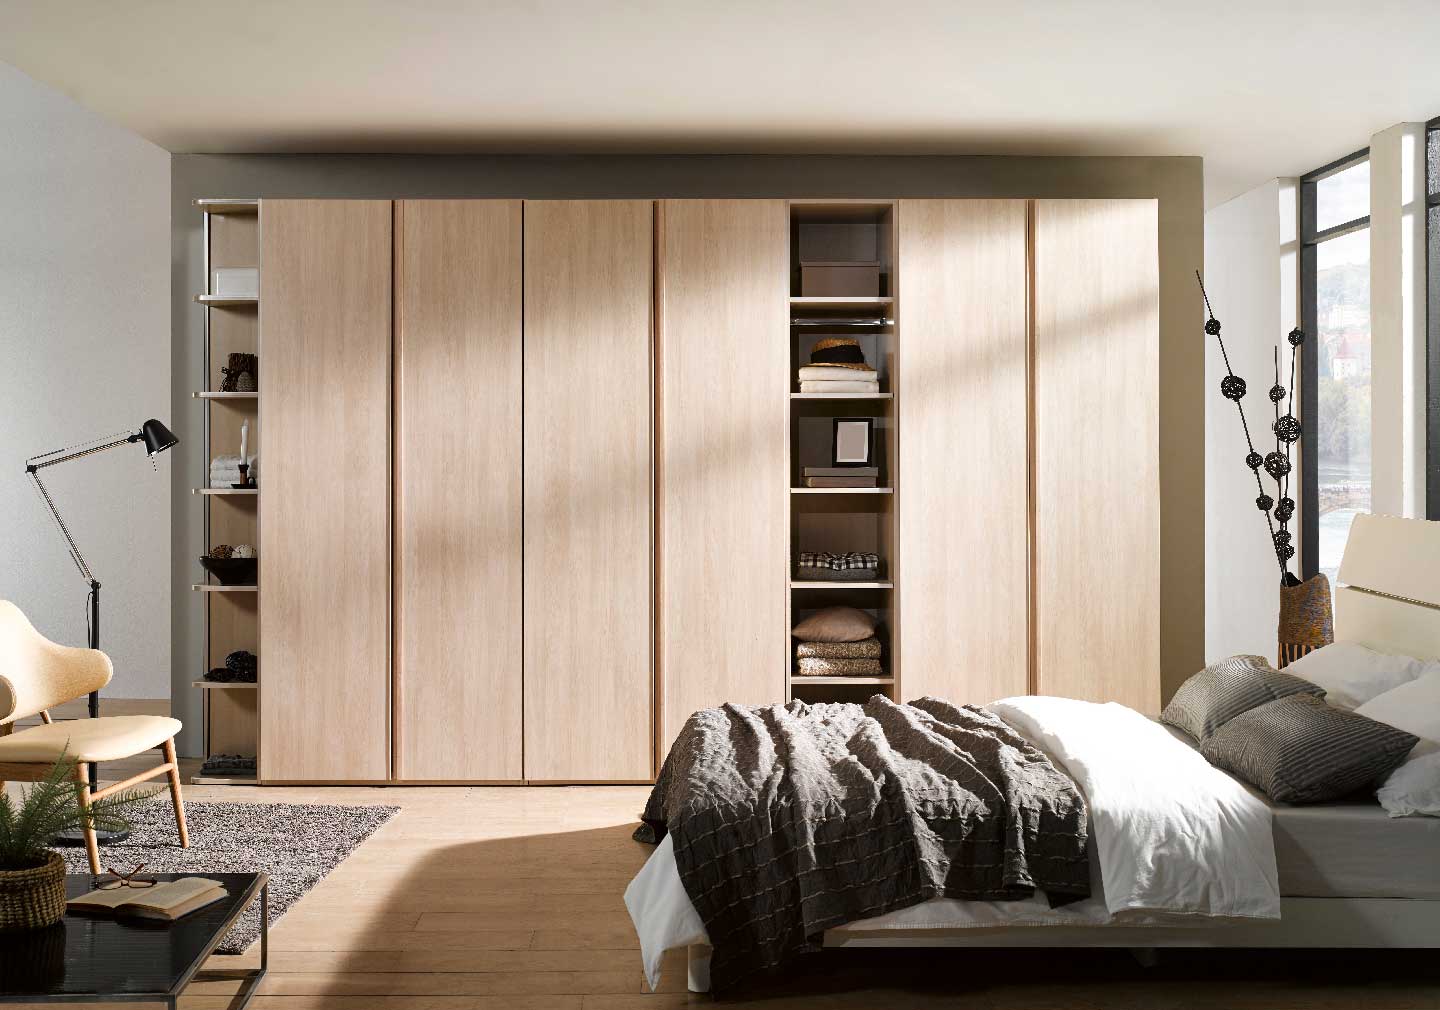 Stunning wooden Bedroom Wardrobe Designs